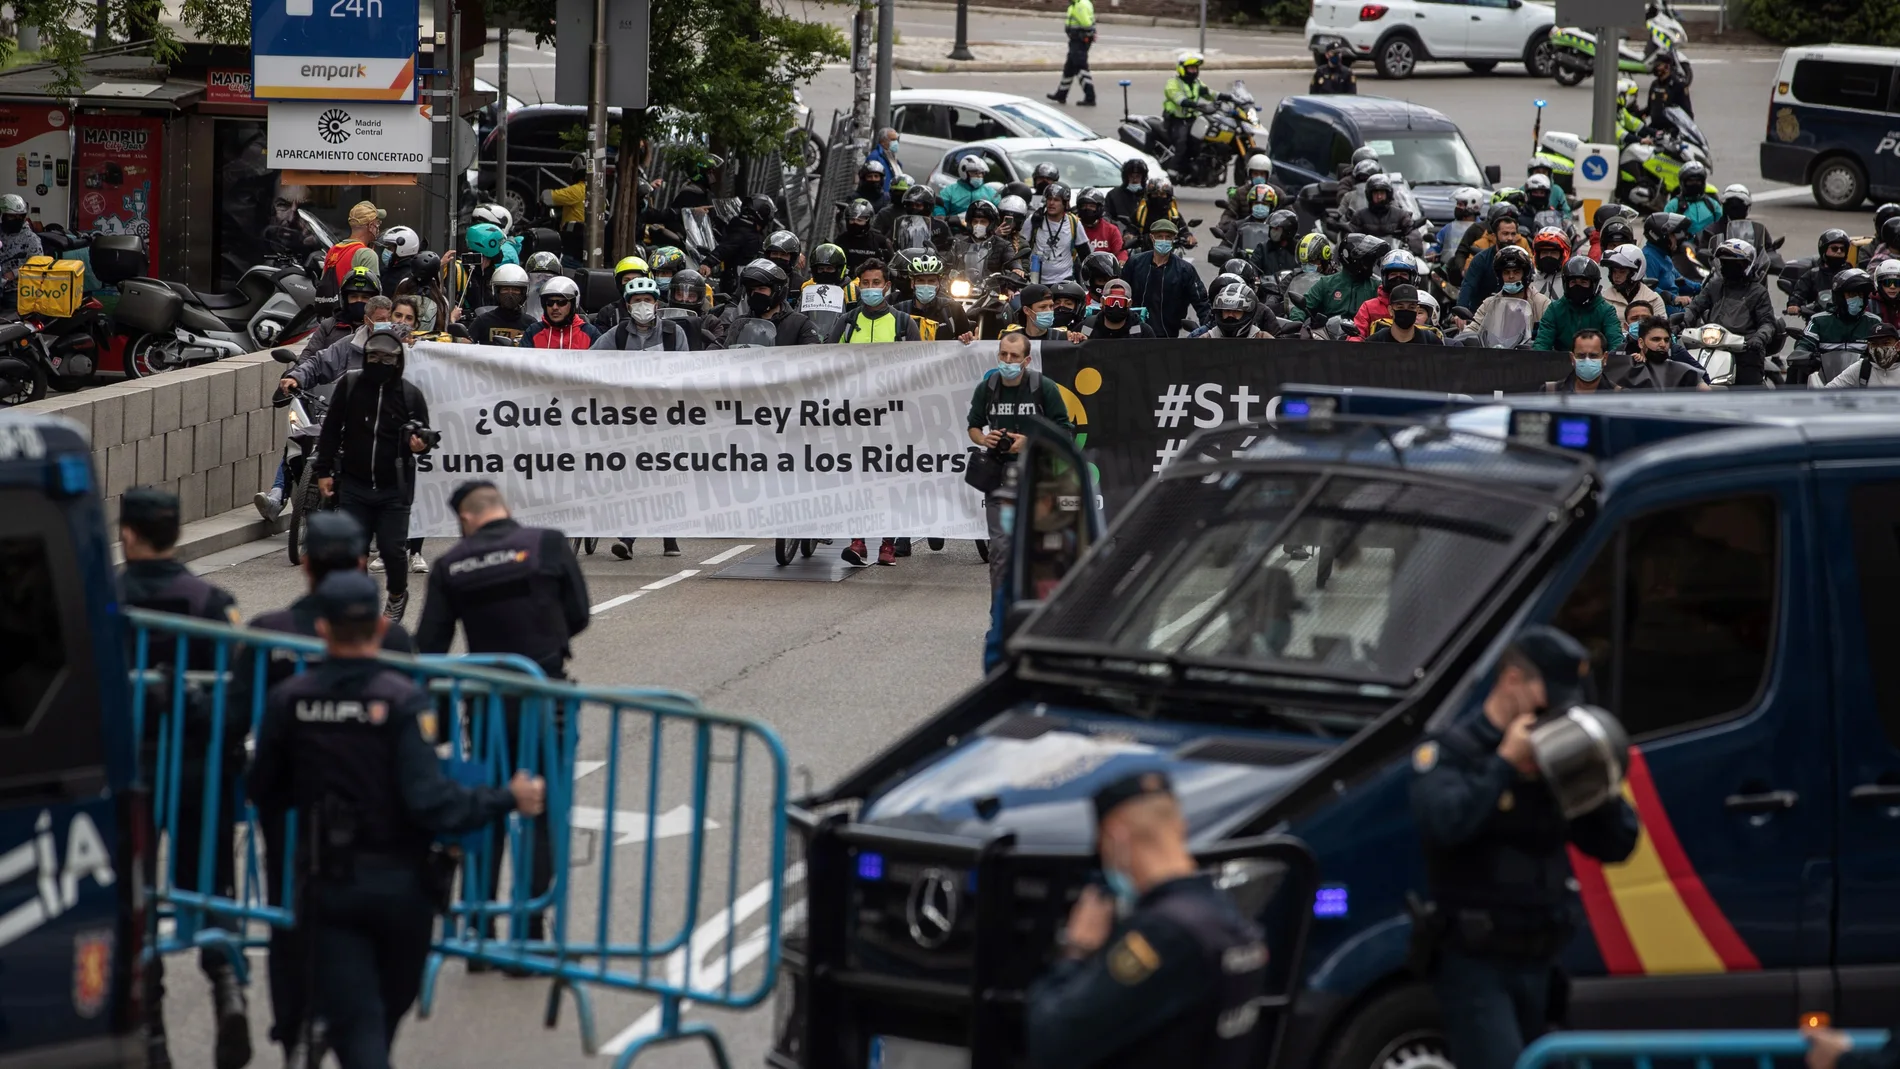 Alrededor de 300 "riders" pro-autónomos protestan frente al Congreso de los Diputados contra la aprobación de la "Ley Rider"